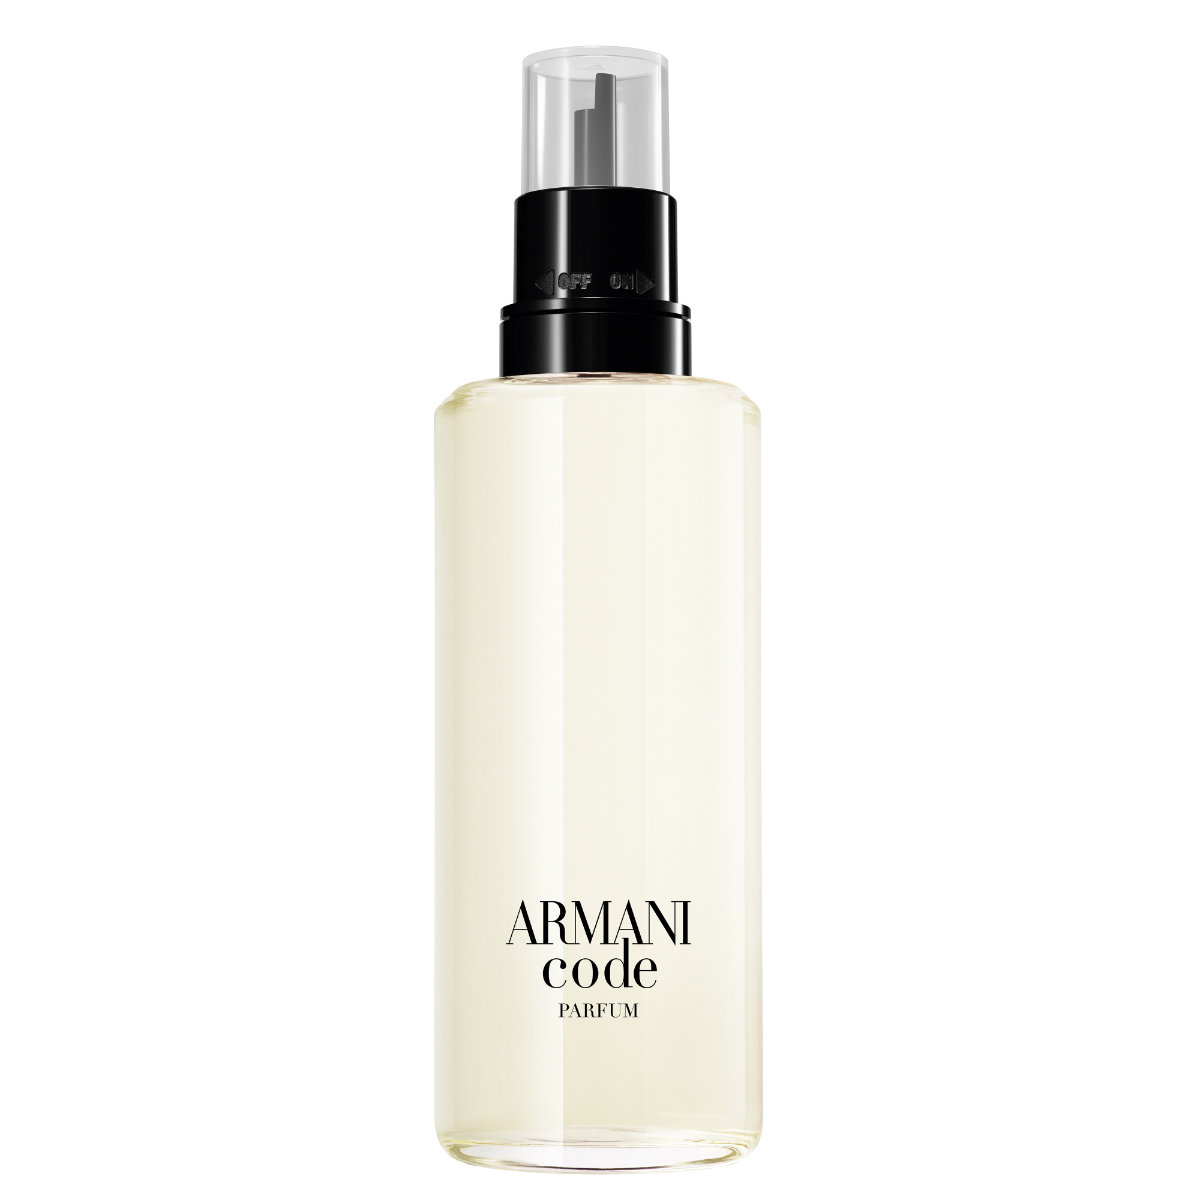 Giorgio Armani Unveiled Its New Armani Code Parfume